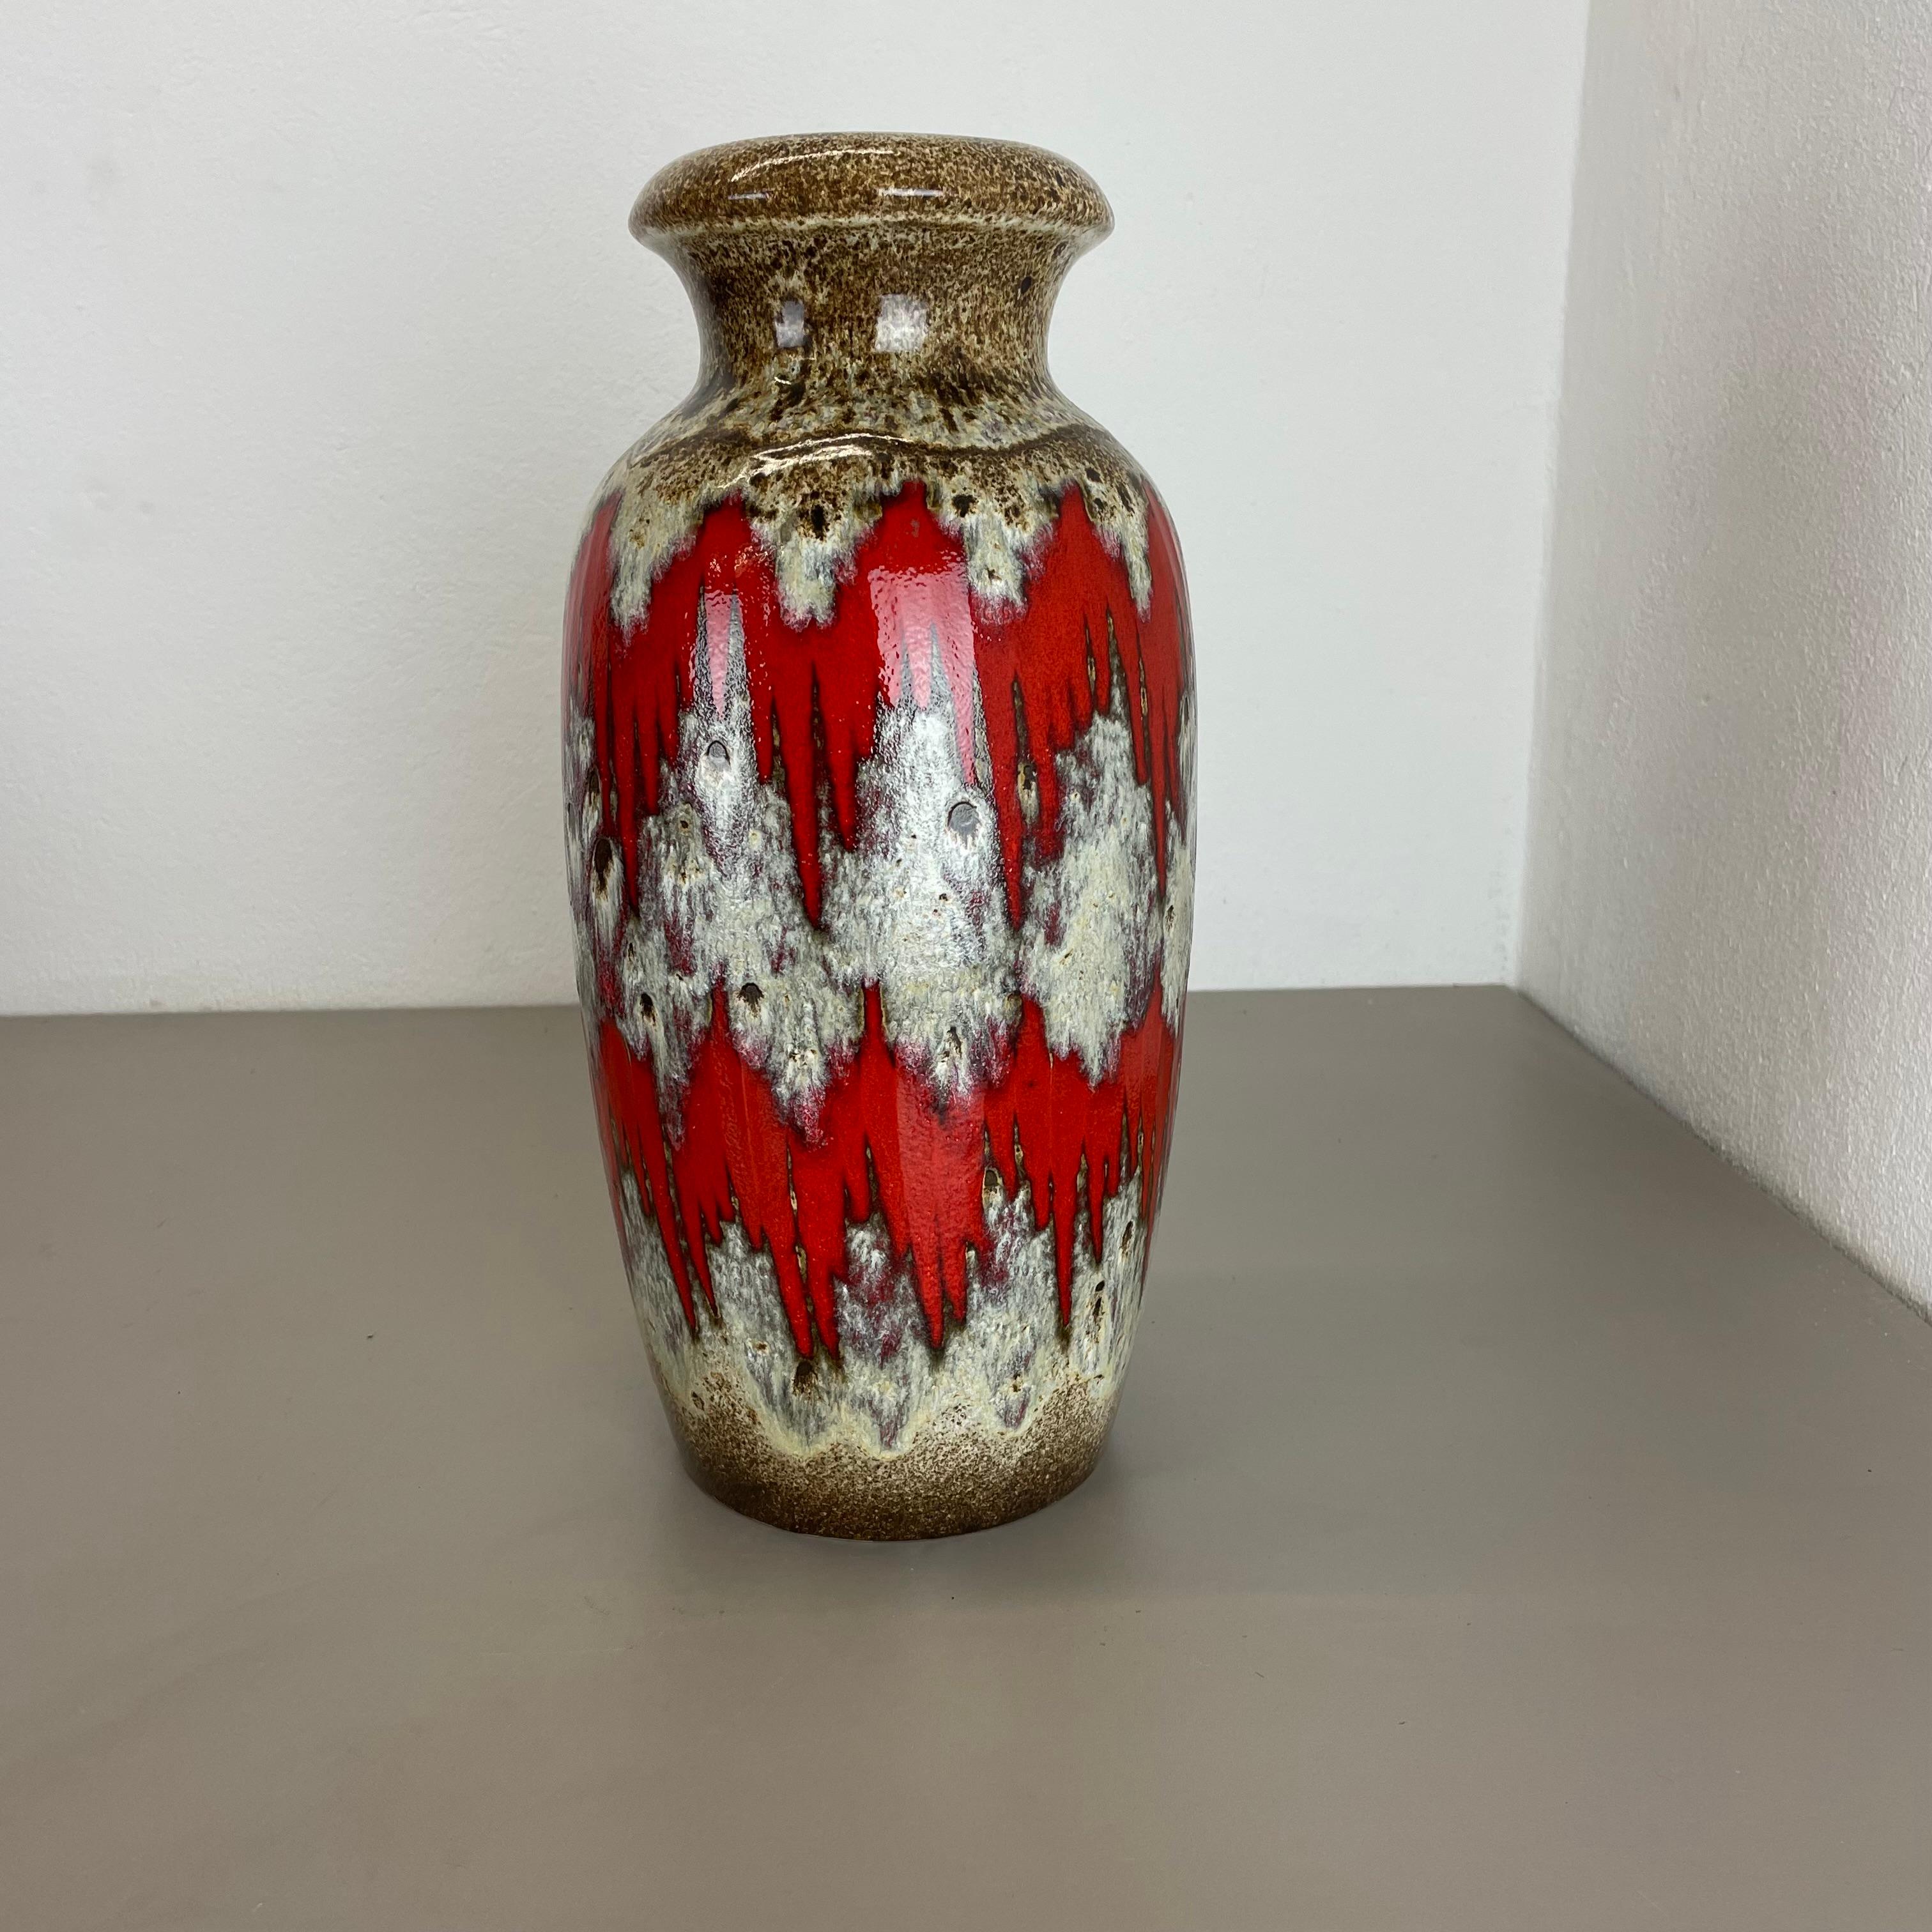 Article :

Vase d'art en lave grasse super rare LORA DECOR.



Producteur :

Scheurich, Allemagne



Décennie :

1970s




Ce vase vintage original a été produit dans les années 1970 en Allemagne par Scheurich. Il est réalisé en poterie céramique en